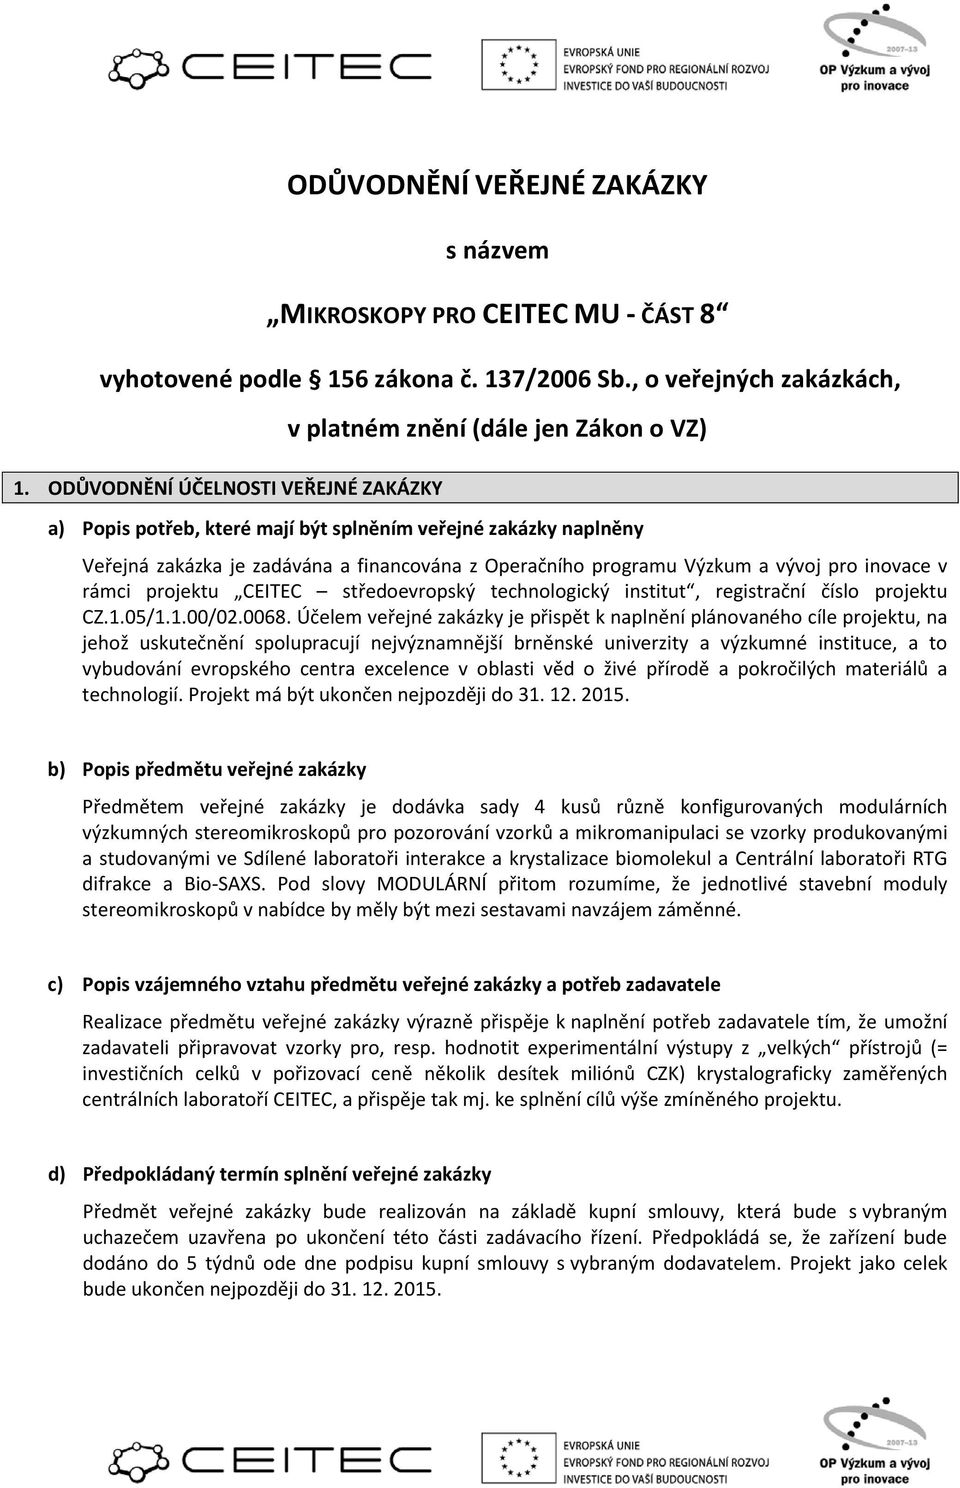 programu Výzkum a vývoj pro inovace v rámci projektu CEITEC středoevropský technologický institut, registrační číslo projektu CZ.1.05/1.1.00/02.0068.